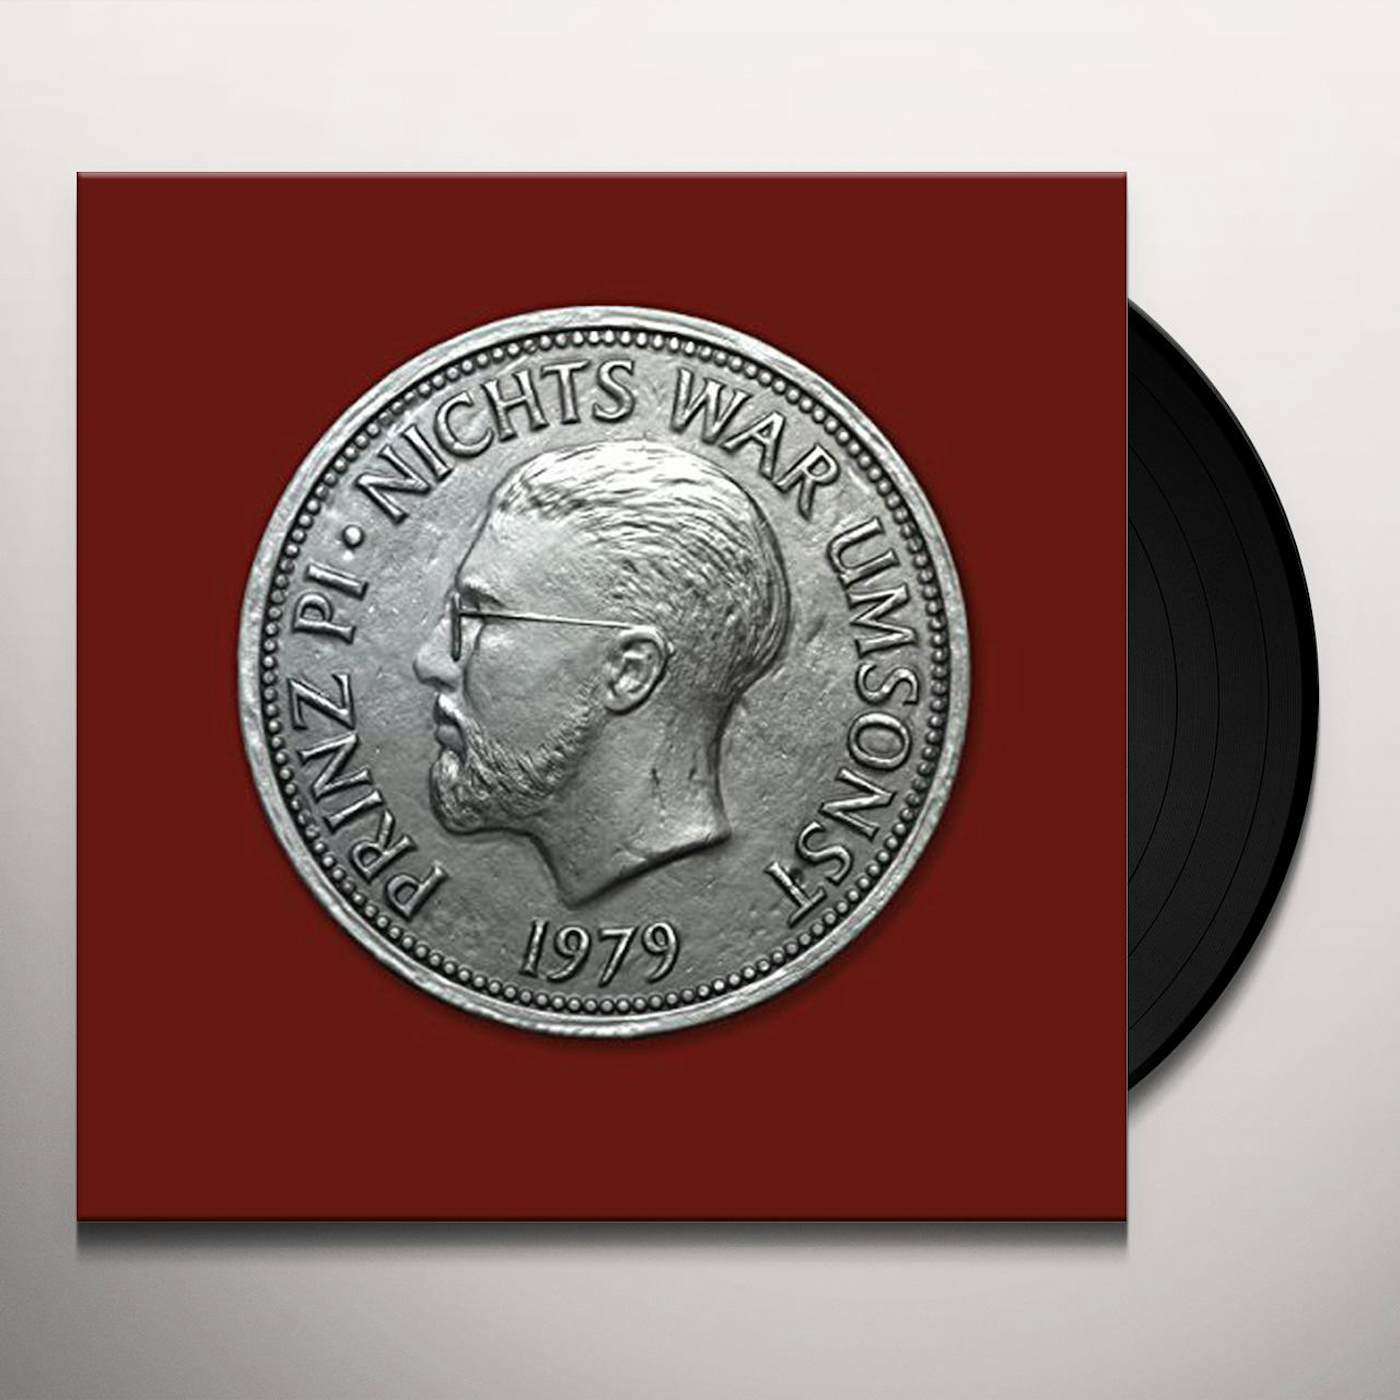 Prinz Pi Nichts war umsonst Vinyl Record